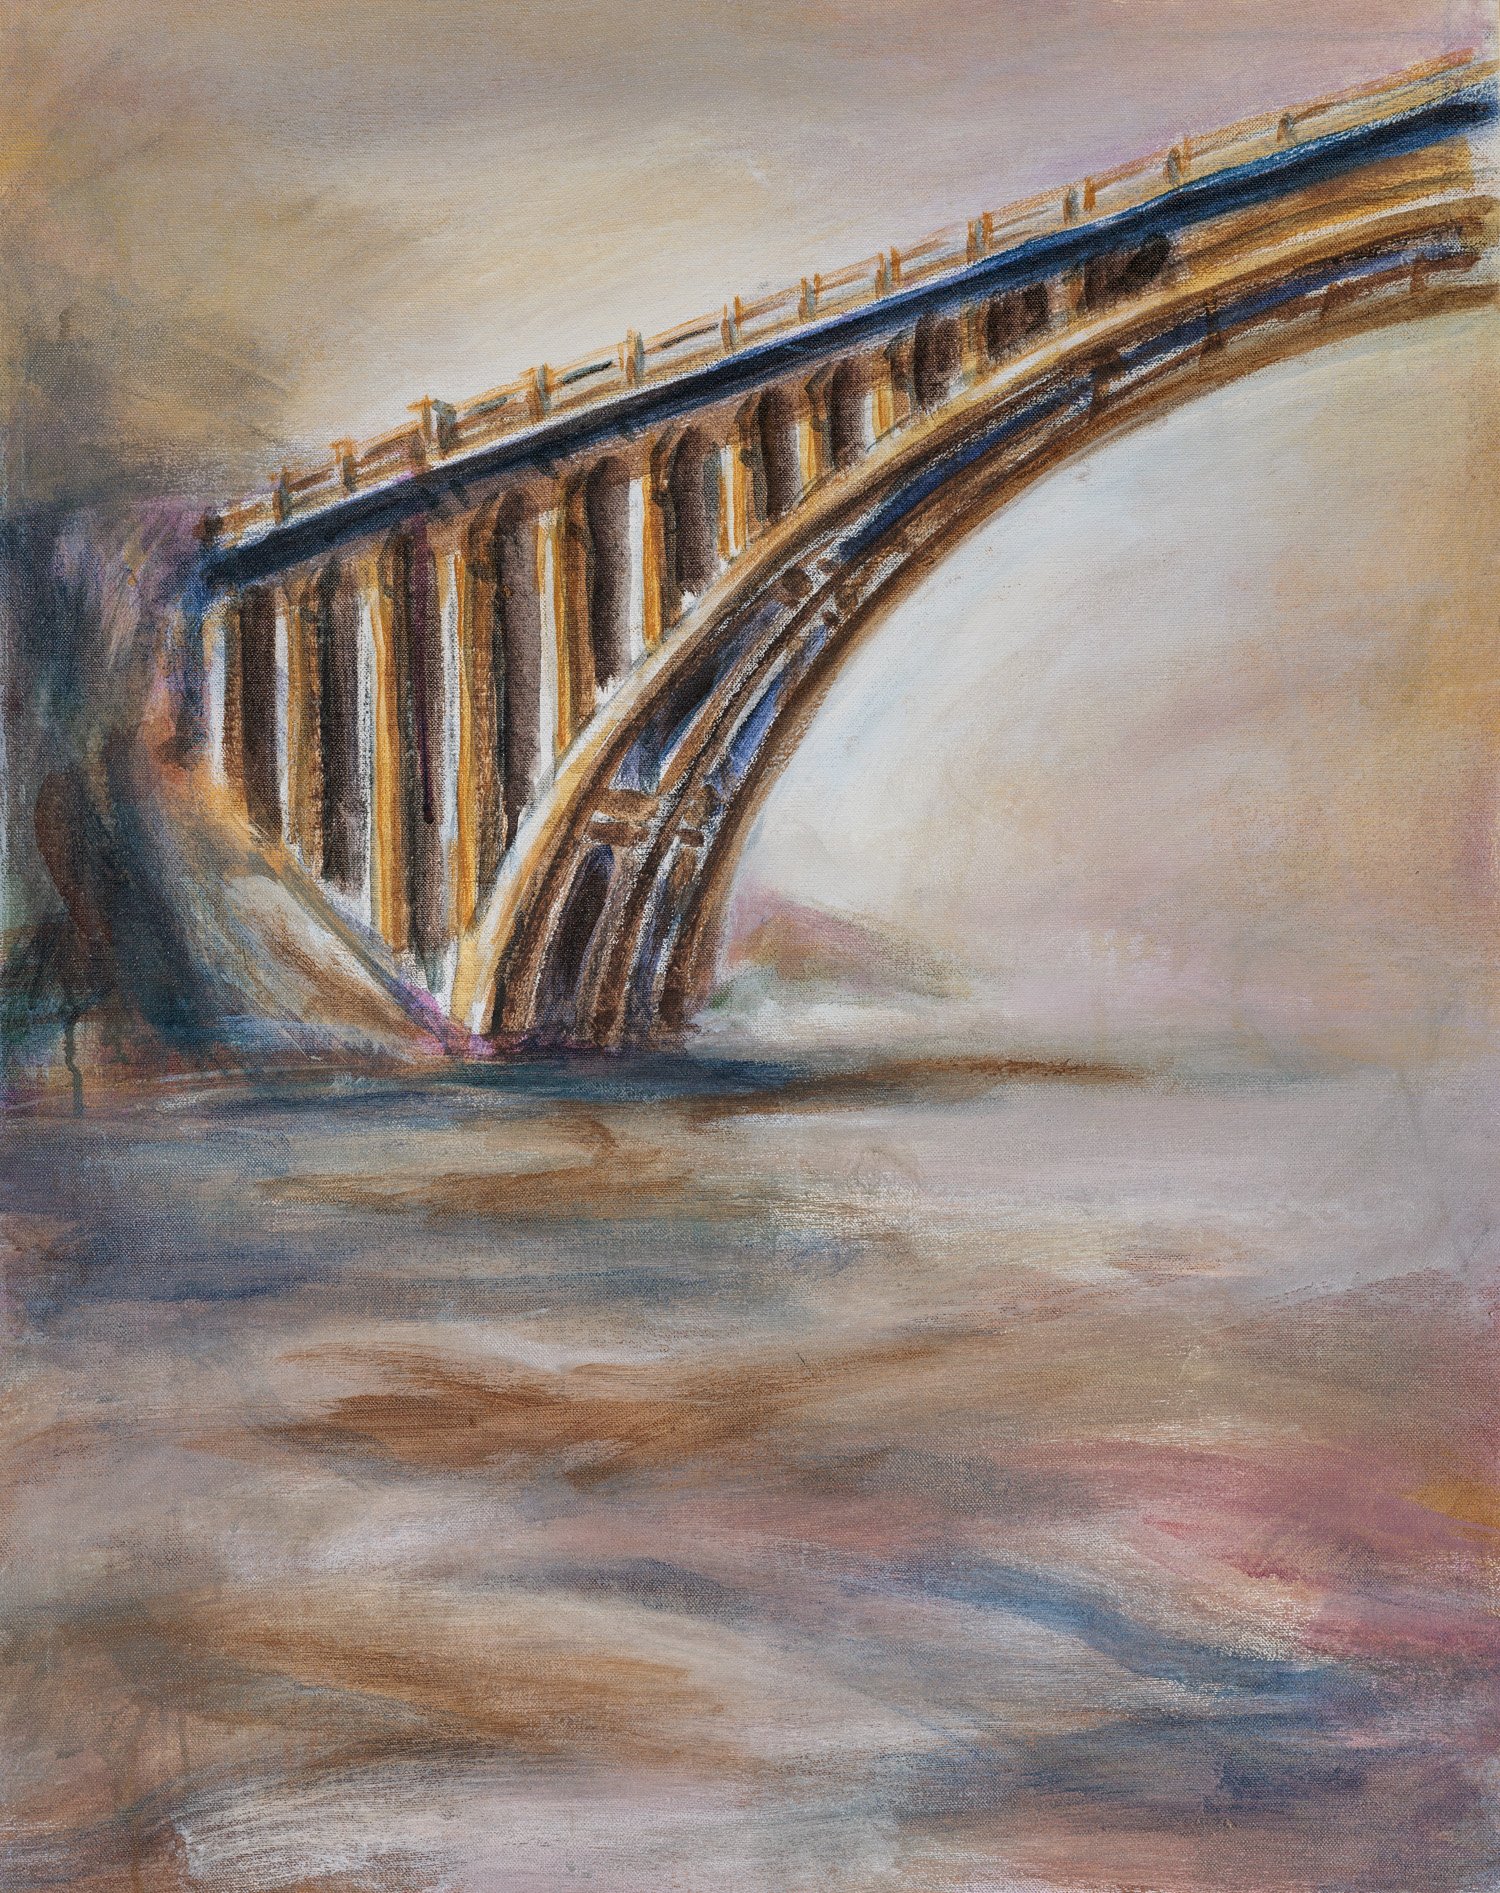 Concrete Bridge - 30” x 24”,  Acrylic on Canvas, $1200